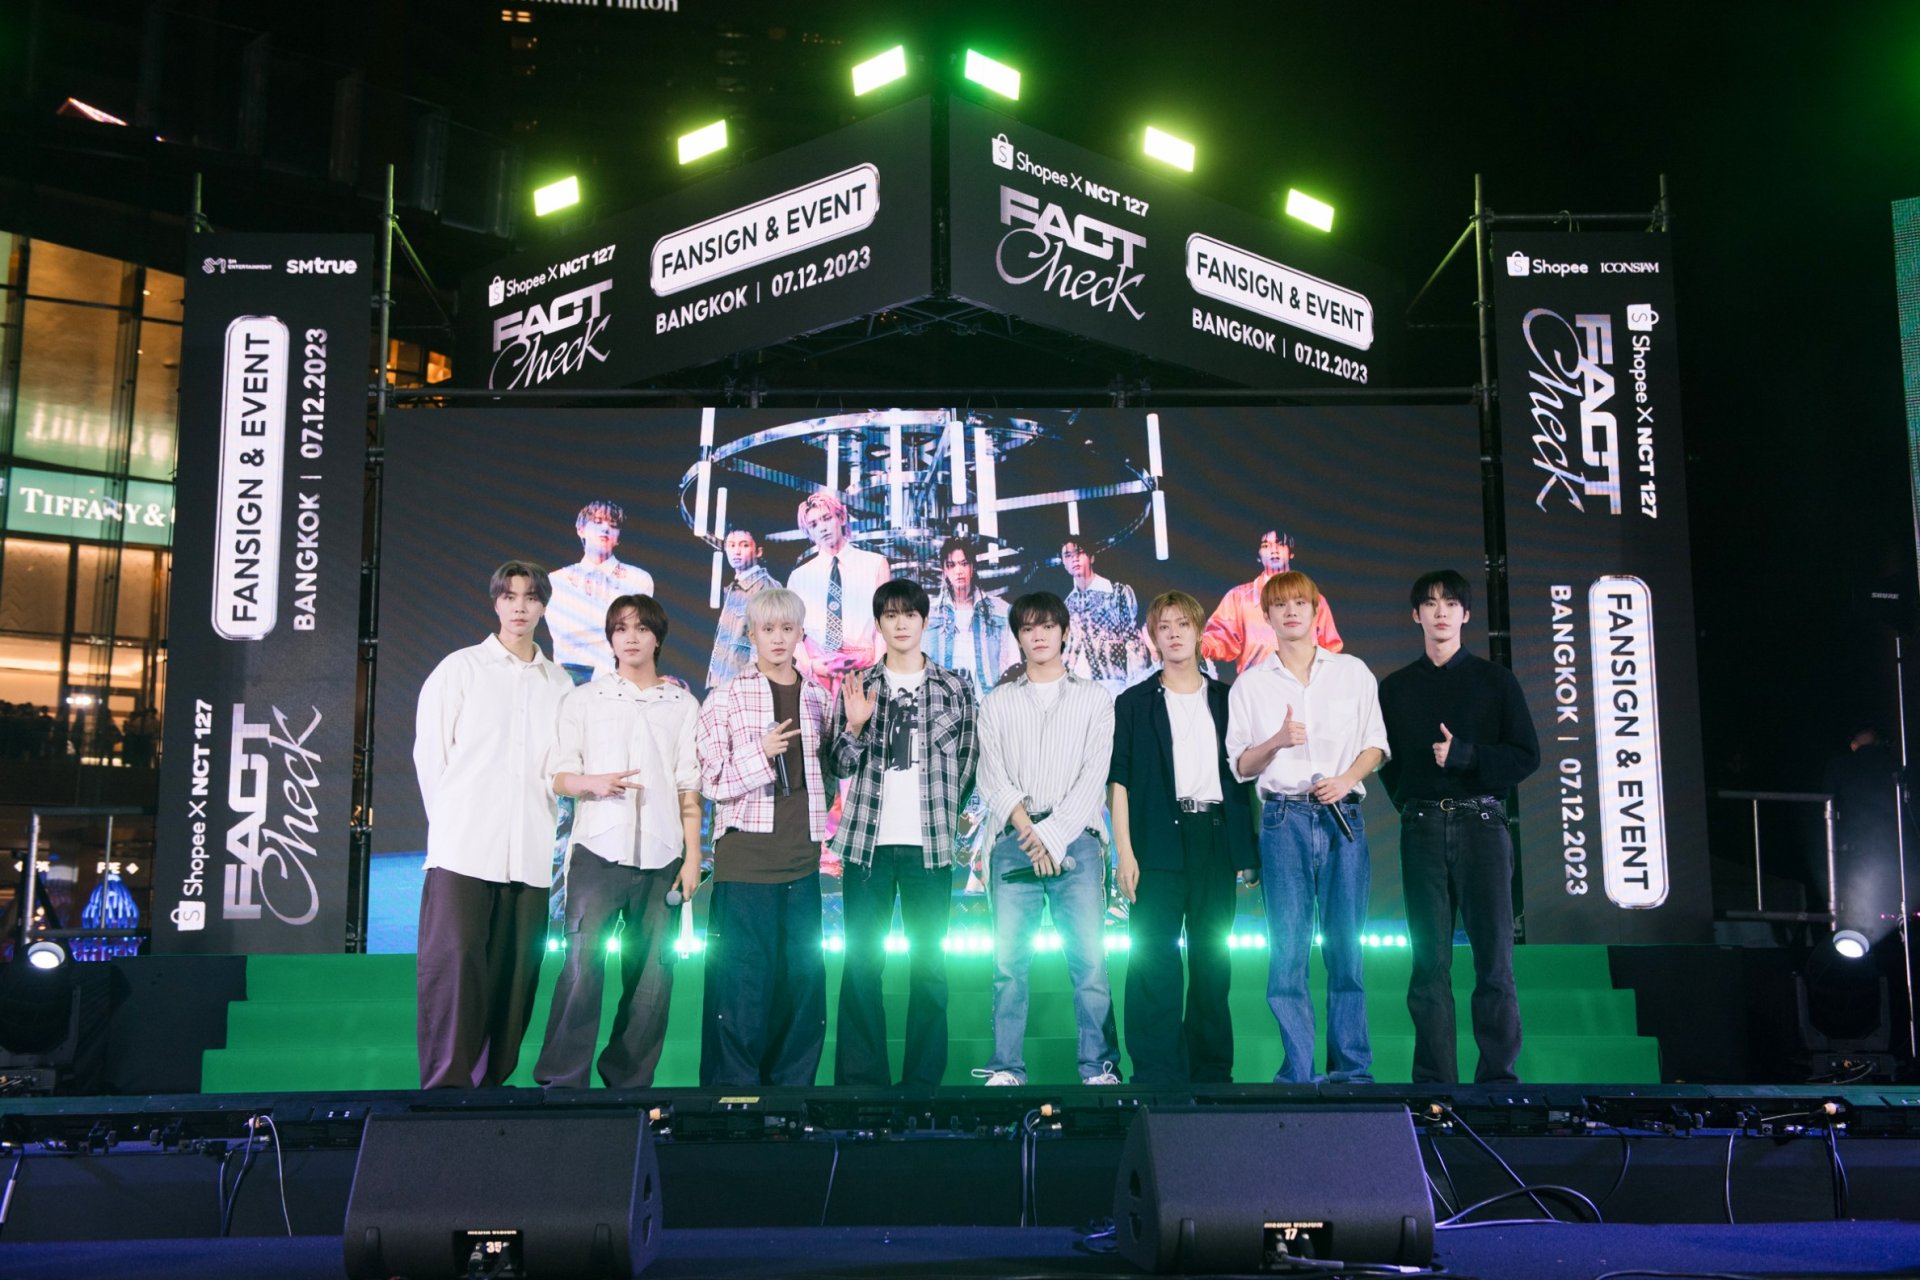 เช็กความร้อนแรงเหนือขีดจำกัดของ NCT 127 ในงานแถลงข่าวและงานแจกลายเซ็น ‘Shopee x NCT 127 Fact Check FANSIGN & EVENT in BANGKOK’ เตรียมเปิดคอนเสิร์ต 27-28 มกราคมนี้